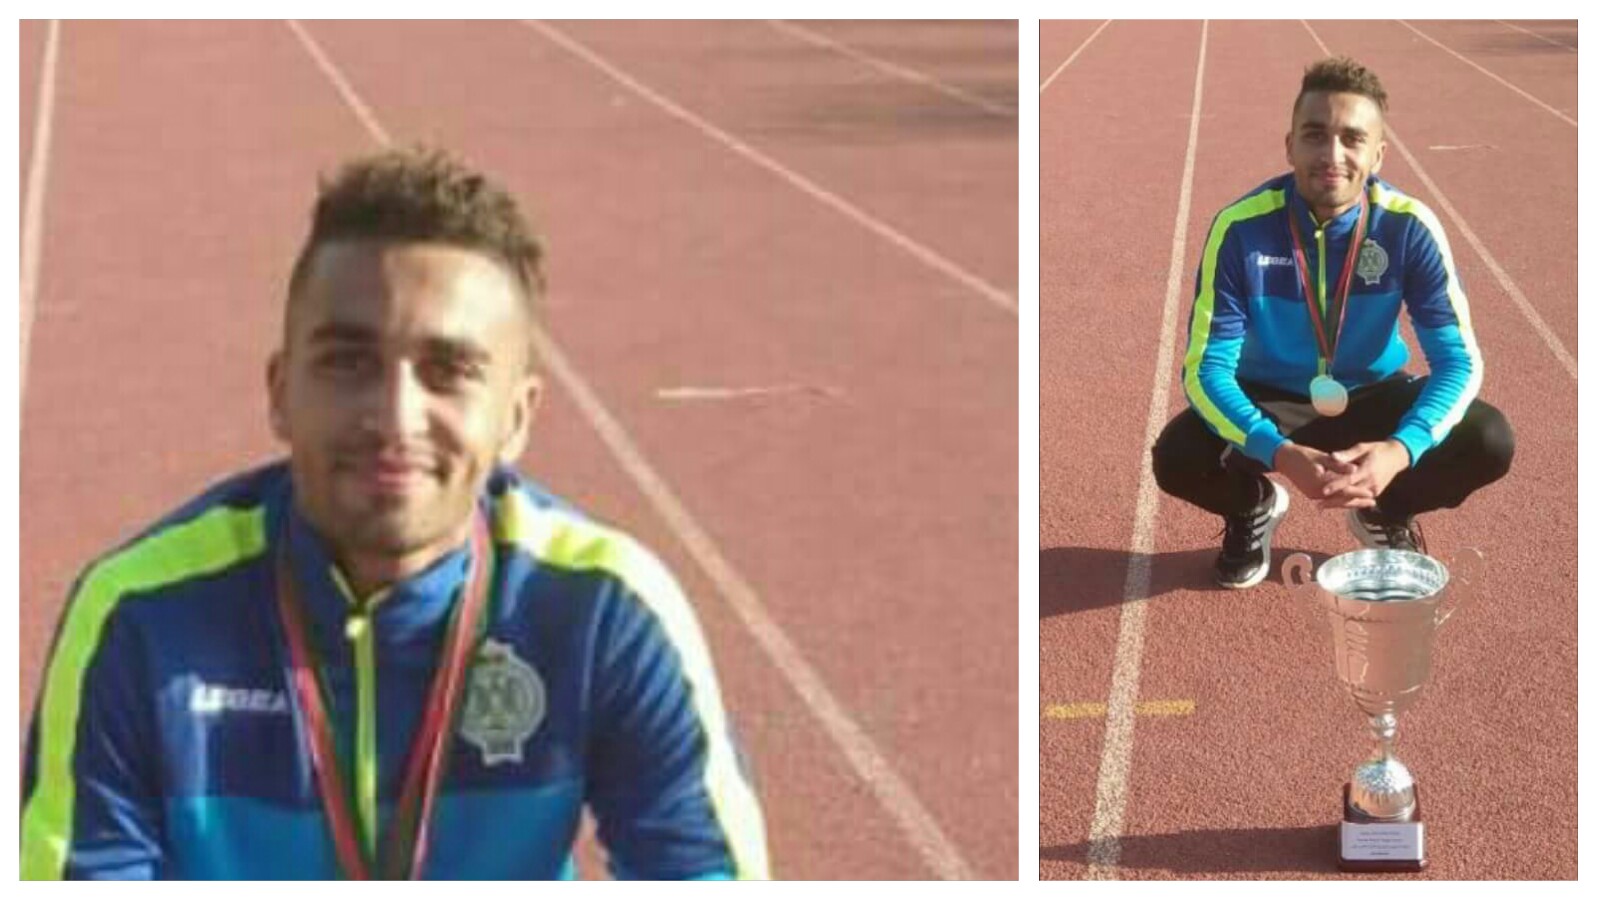 أحمد بركاوي من بني ملال بطل يفوز بثلاث ميداليات بالبطولة الجامعية وموهبة تحتاج المساعدة والتفاتة المسؤولين